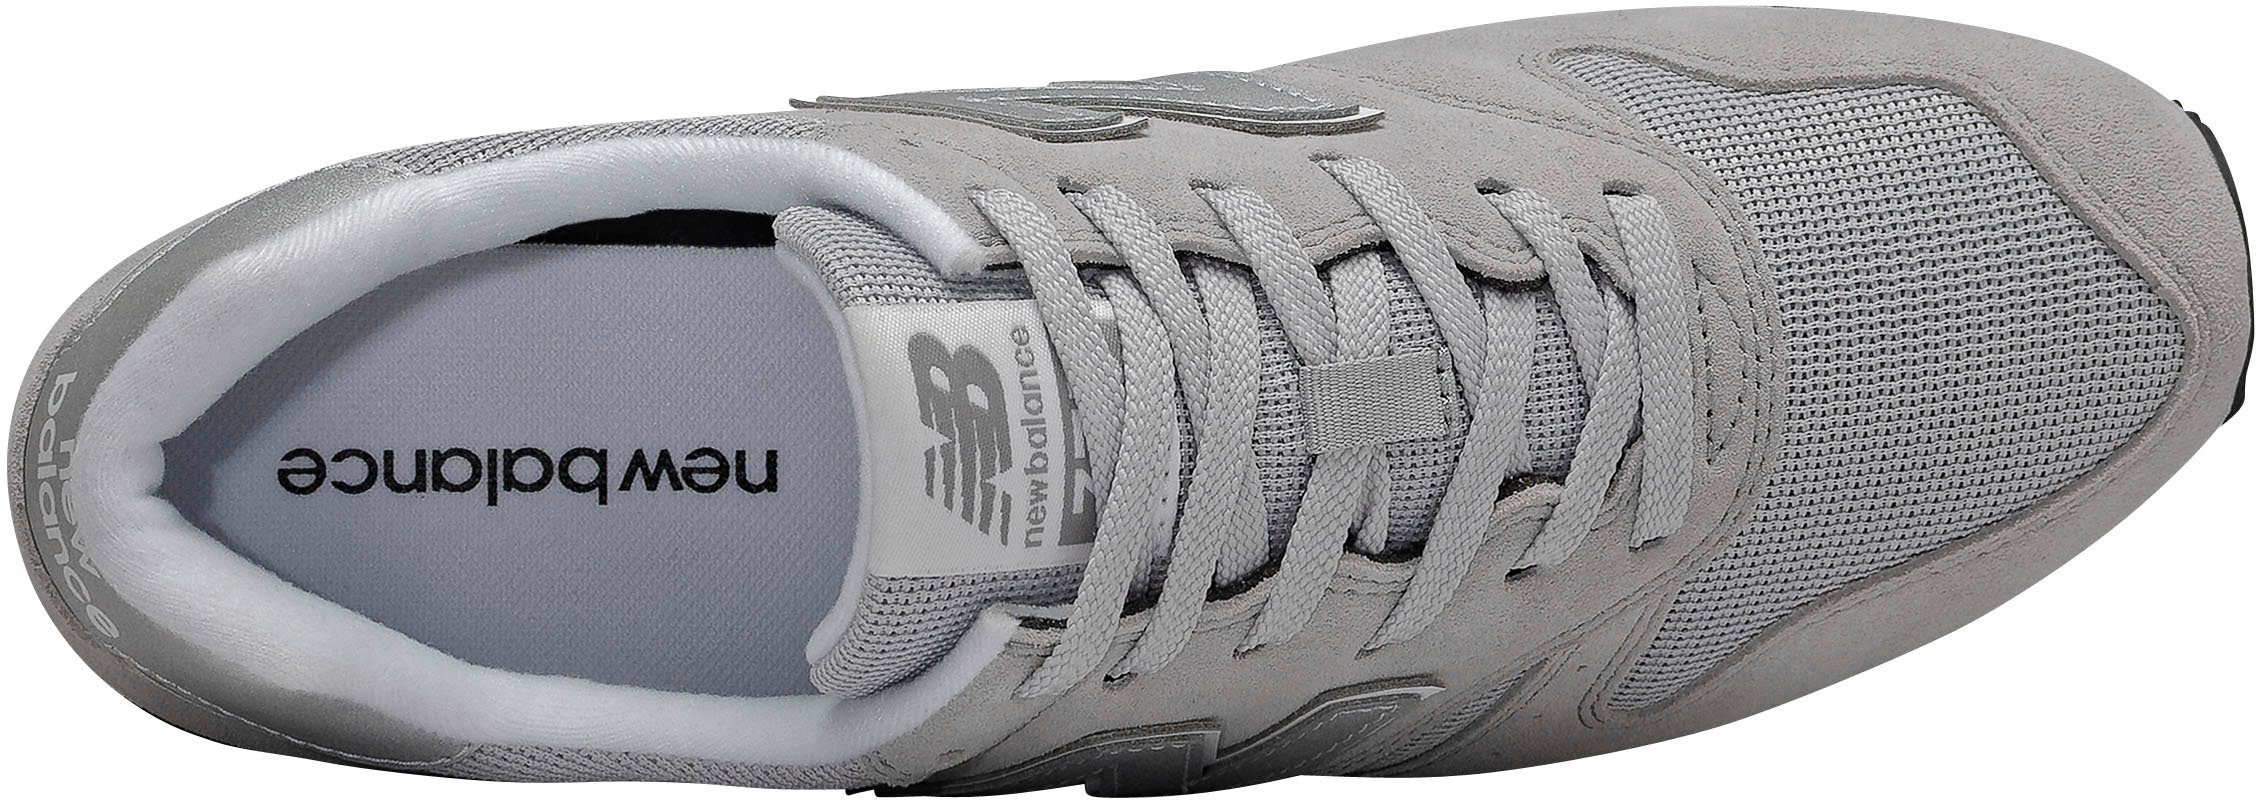 New Balance ML 373 grau Sneaker